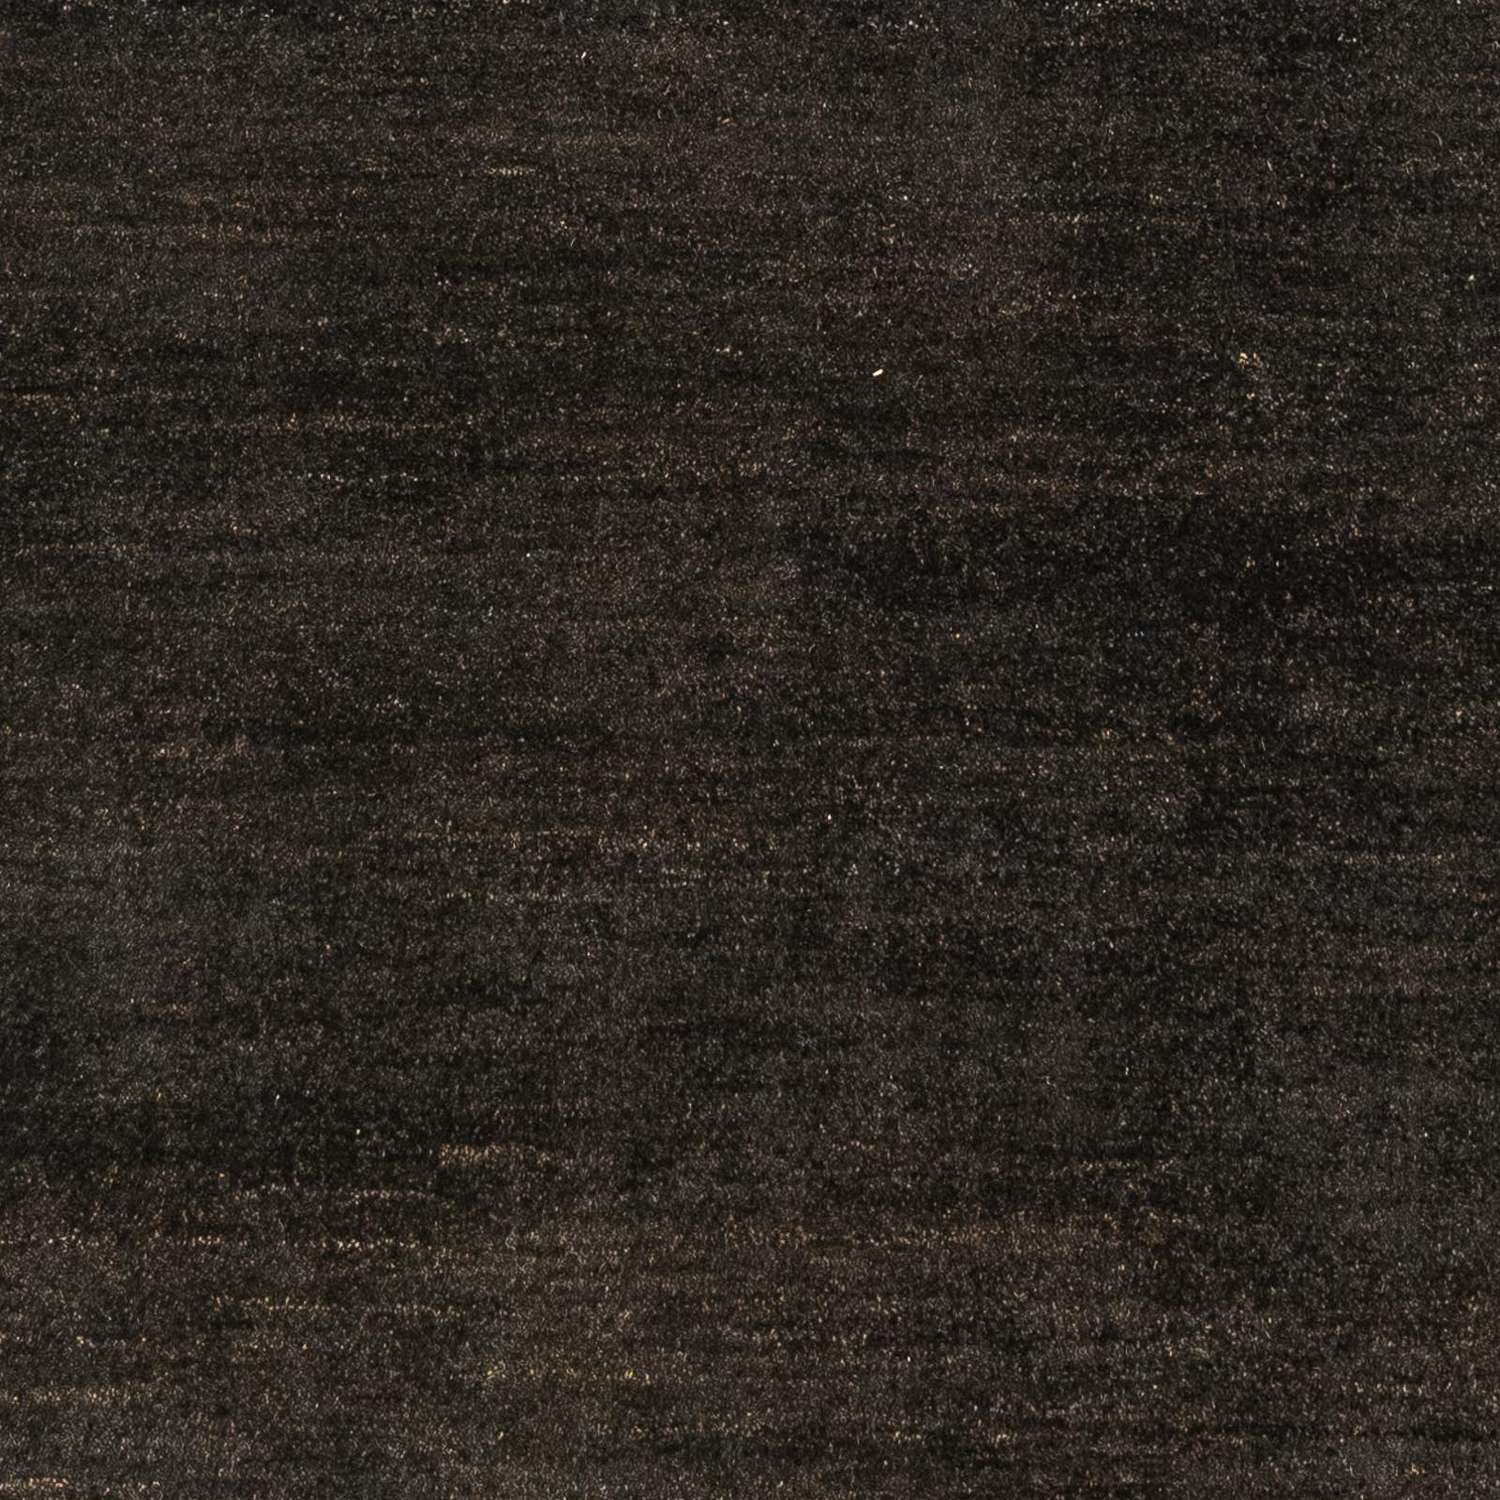 Gabbeh Rug - Indus - 205 x 150 cm - dark brown